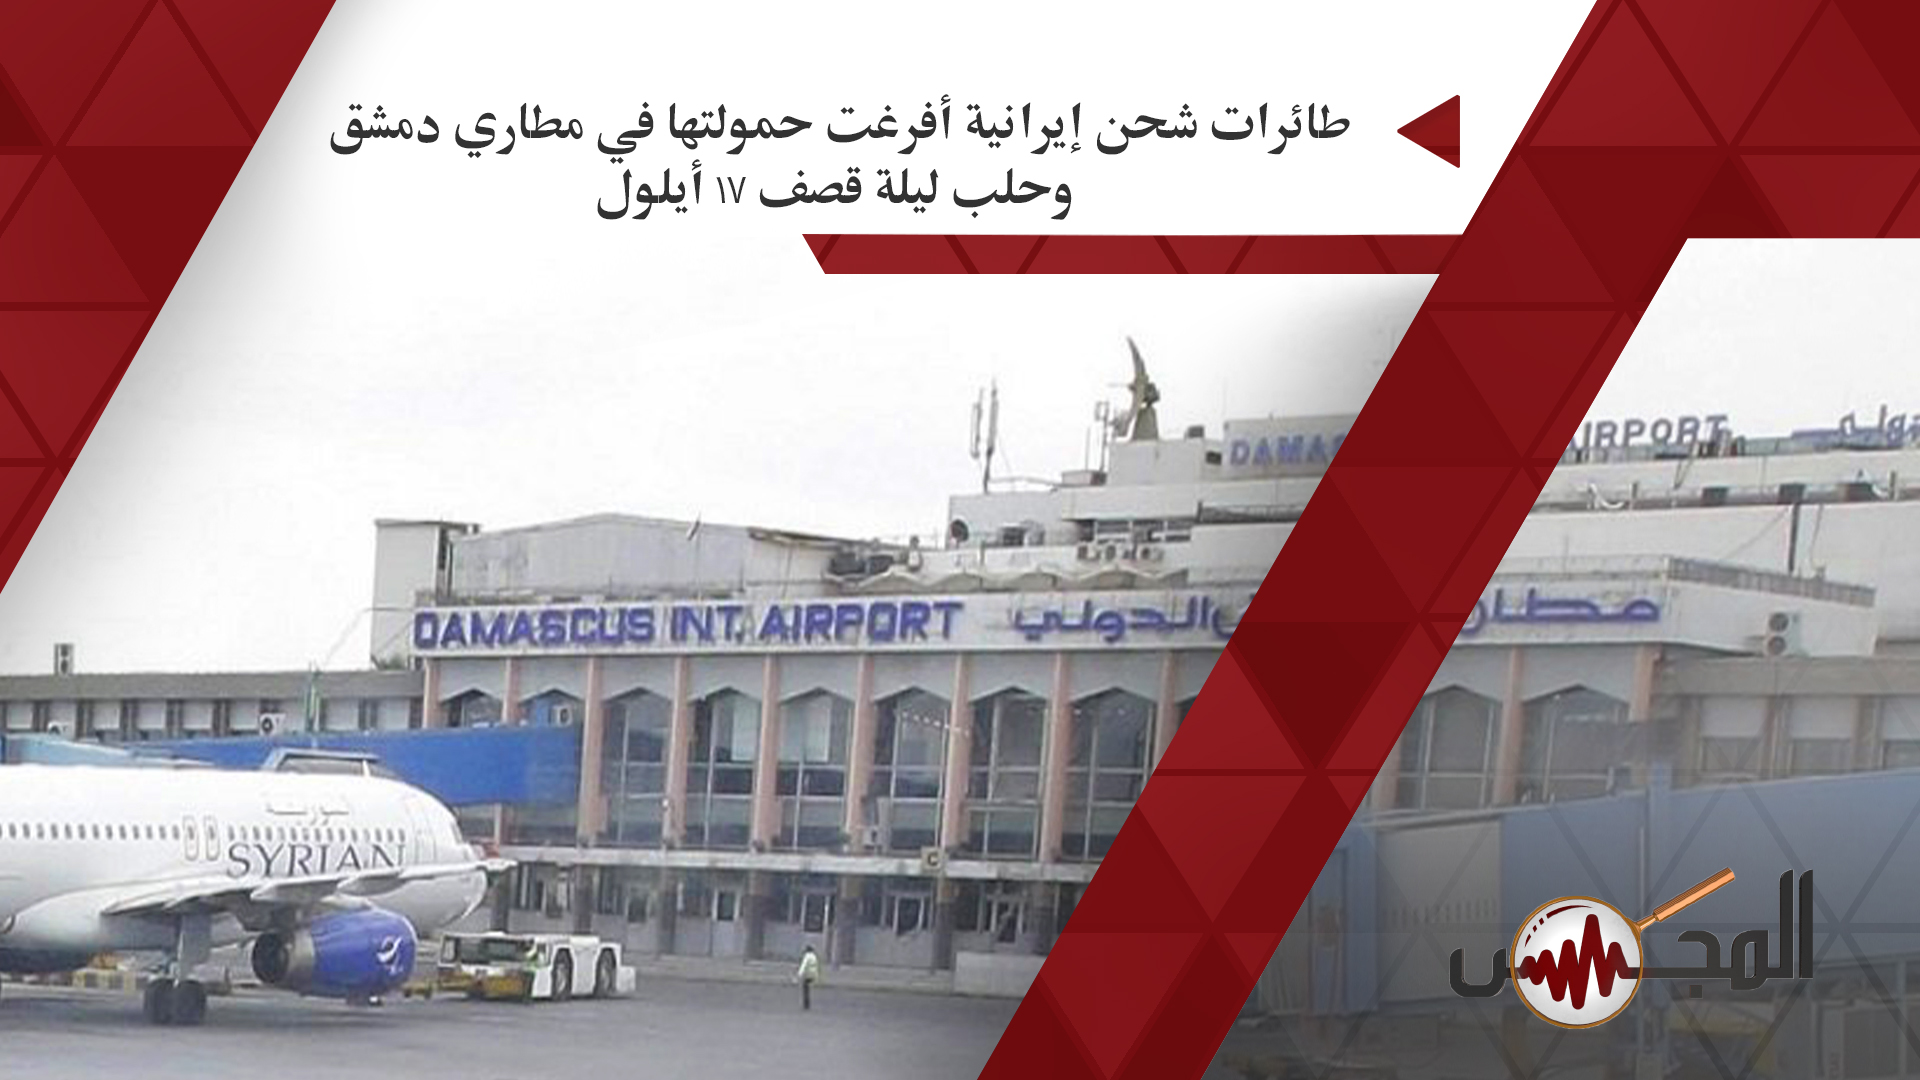 طائرات شحن إيرانية أفرغت حمولتها في مطاري دمشق وحلب ليلة قصف 17 أيلول